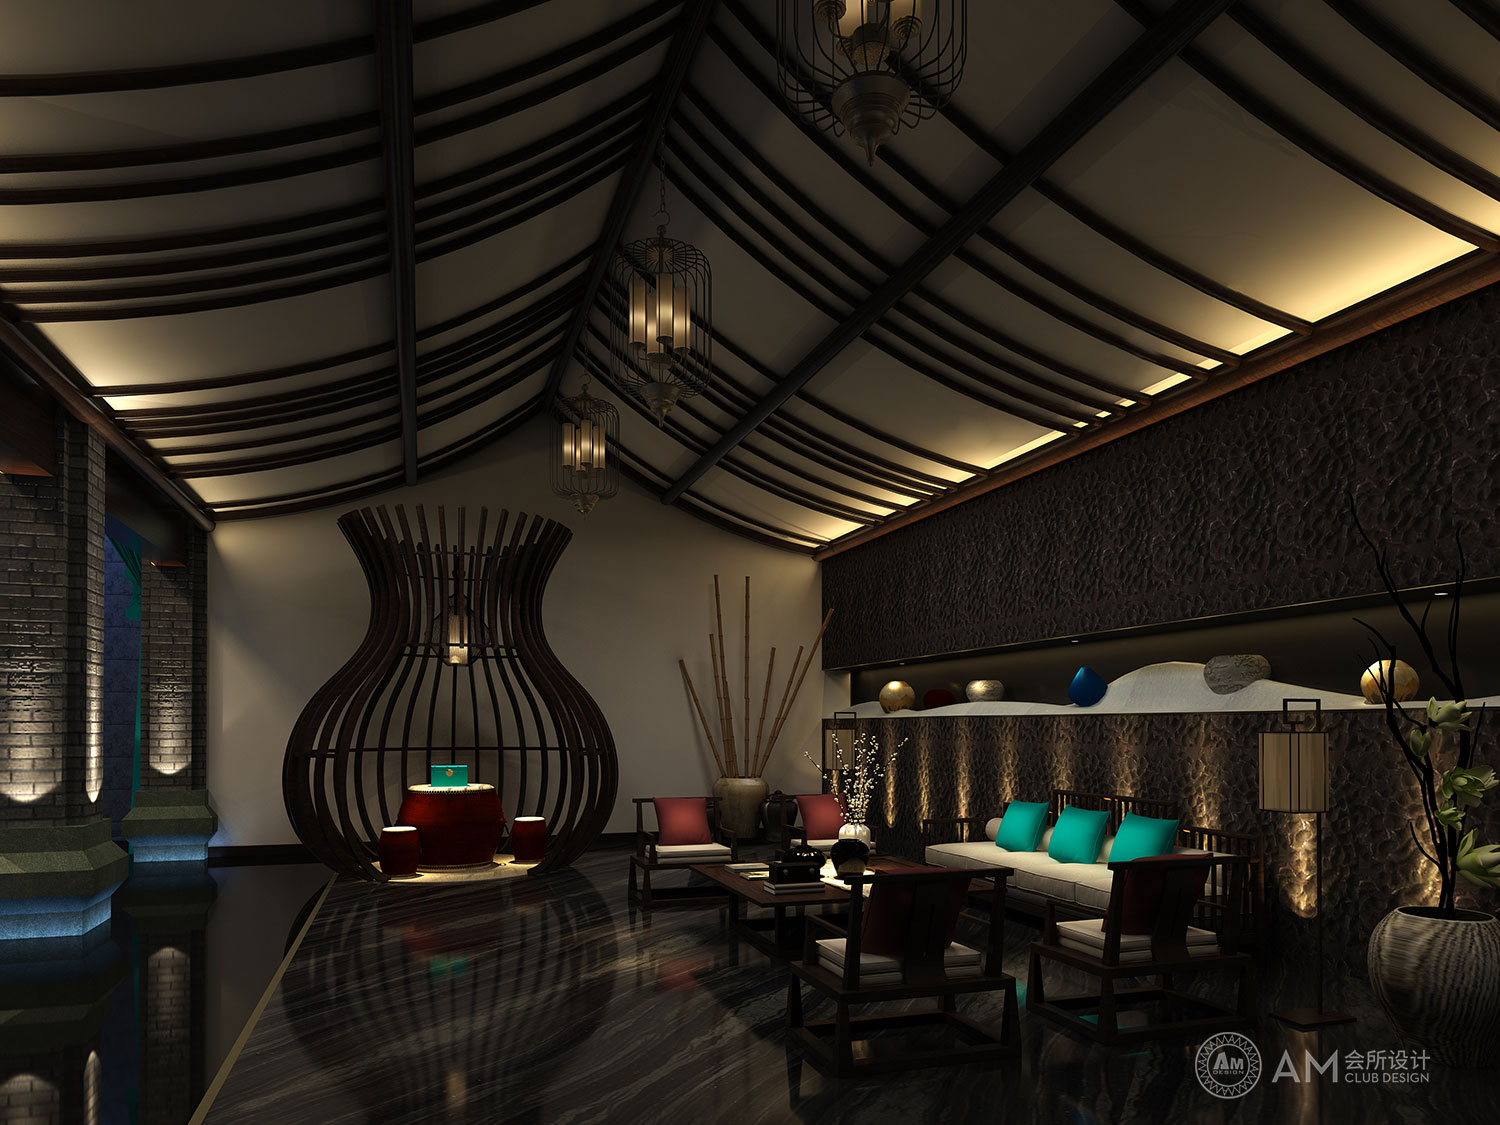 AM DESIGN | Design of qilinhui Top Spa Club Hall